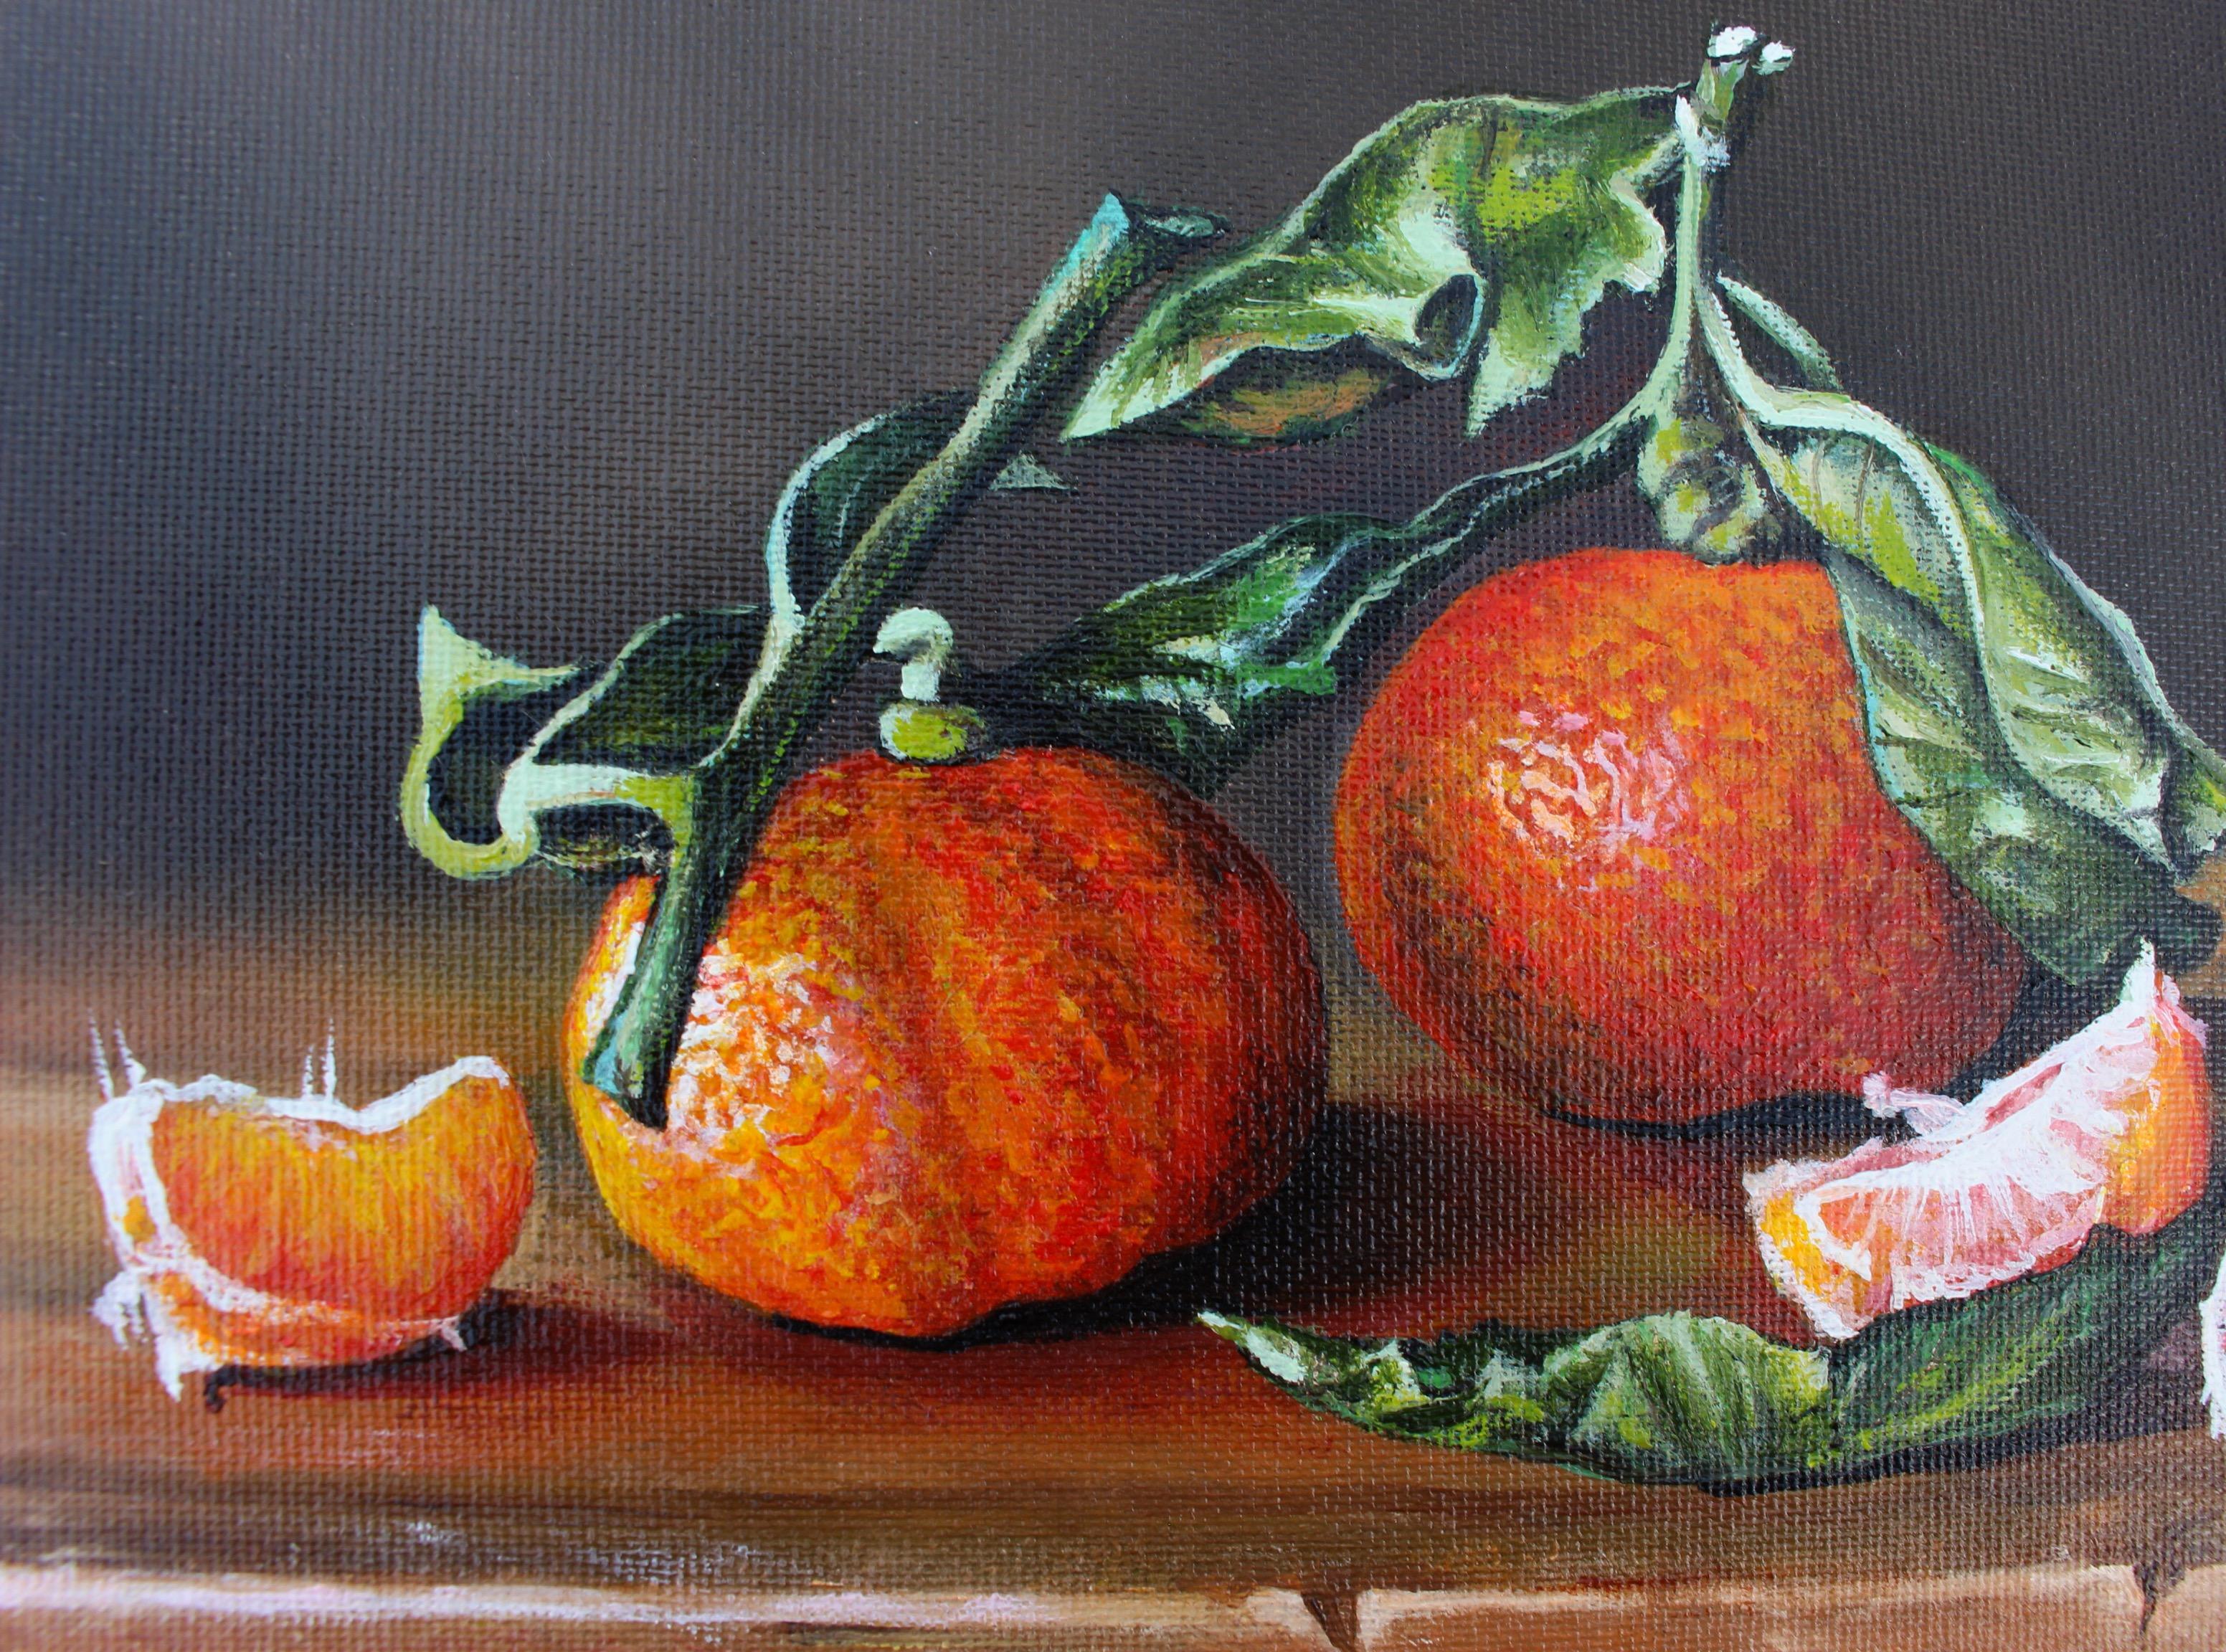 <p>Commentaires de l'artisteCette nature morte à l'huile présente des mandarines Satsuma sur une surface en bois.<br> Le rendu de l'ombre et de la lumière permet de mieux définir la forme des fruits et la texture croquante des feuilles, tandis que